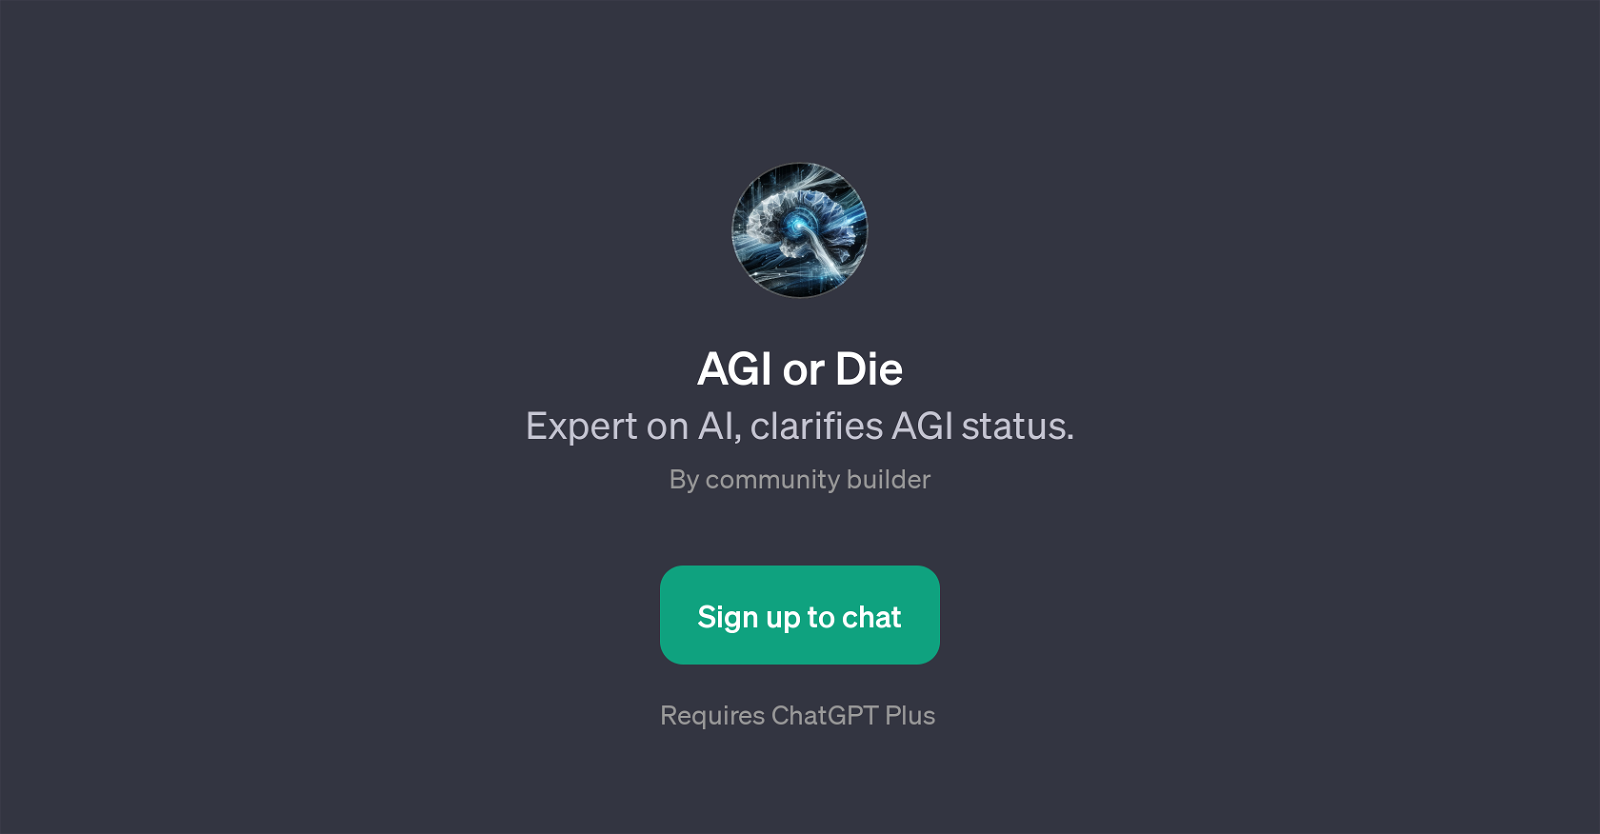 AGI or Die website